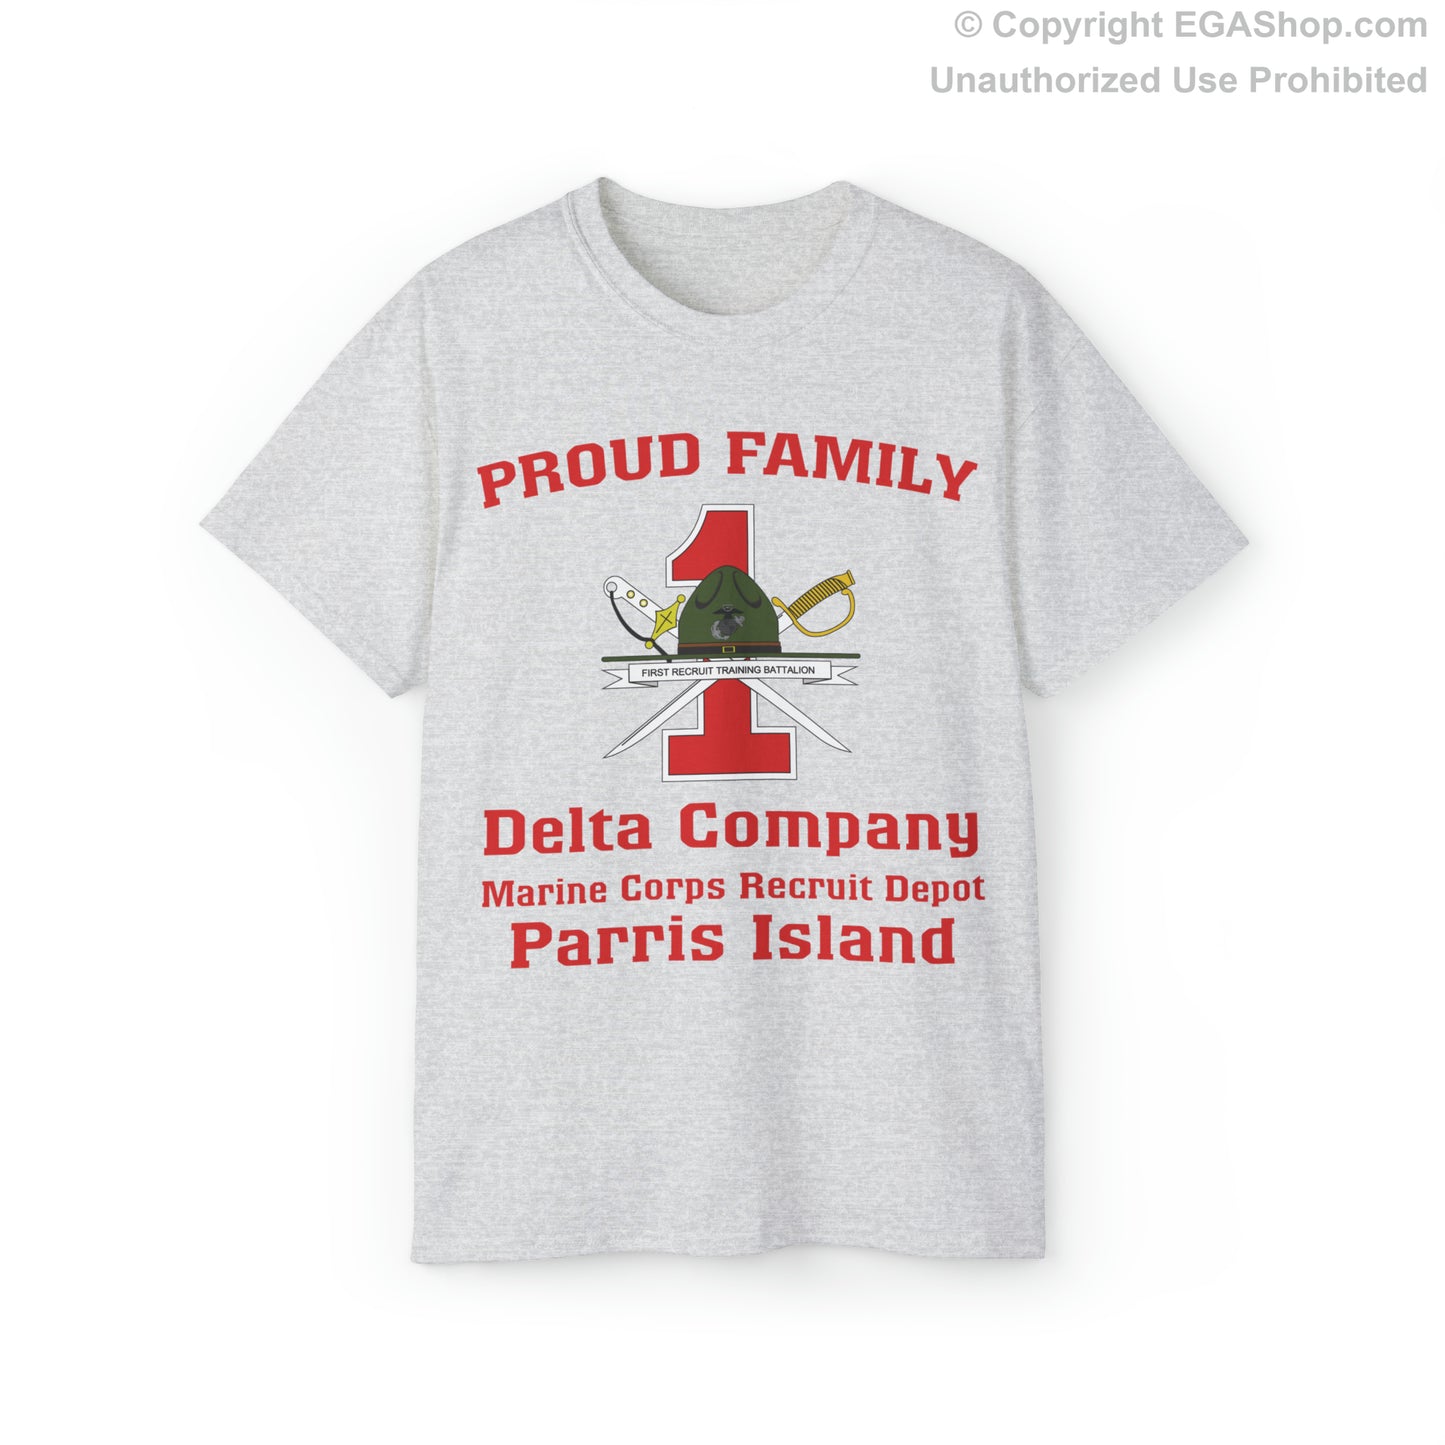 T-Shirt: Delta Co. MCRD Parris Island (1st Battalion Crest)